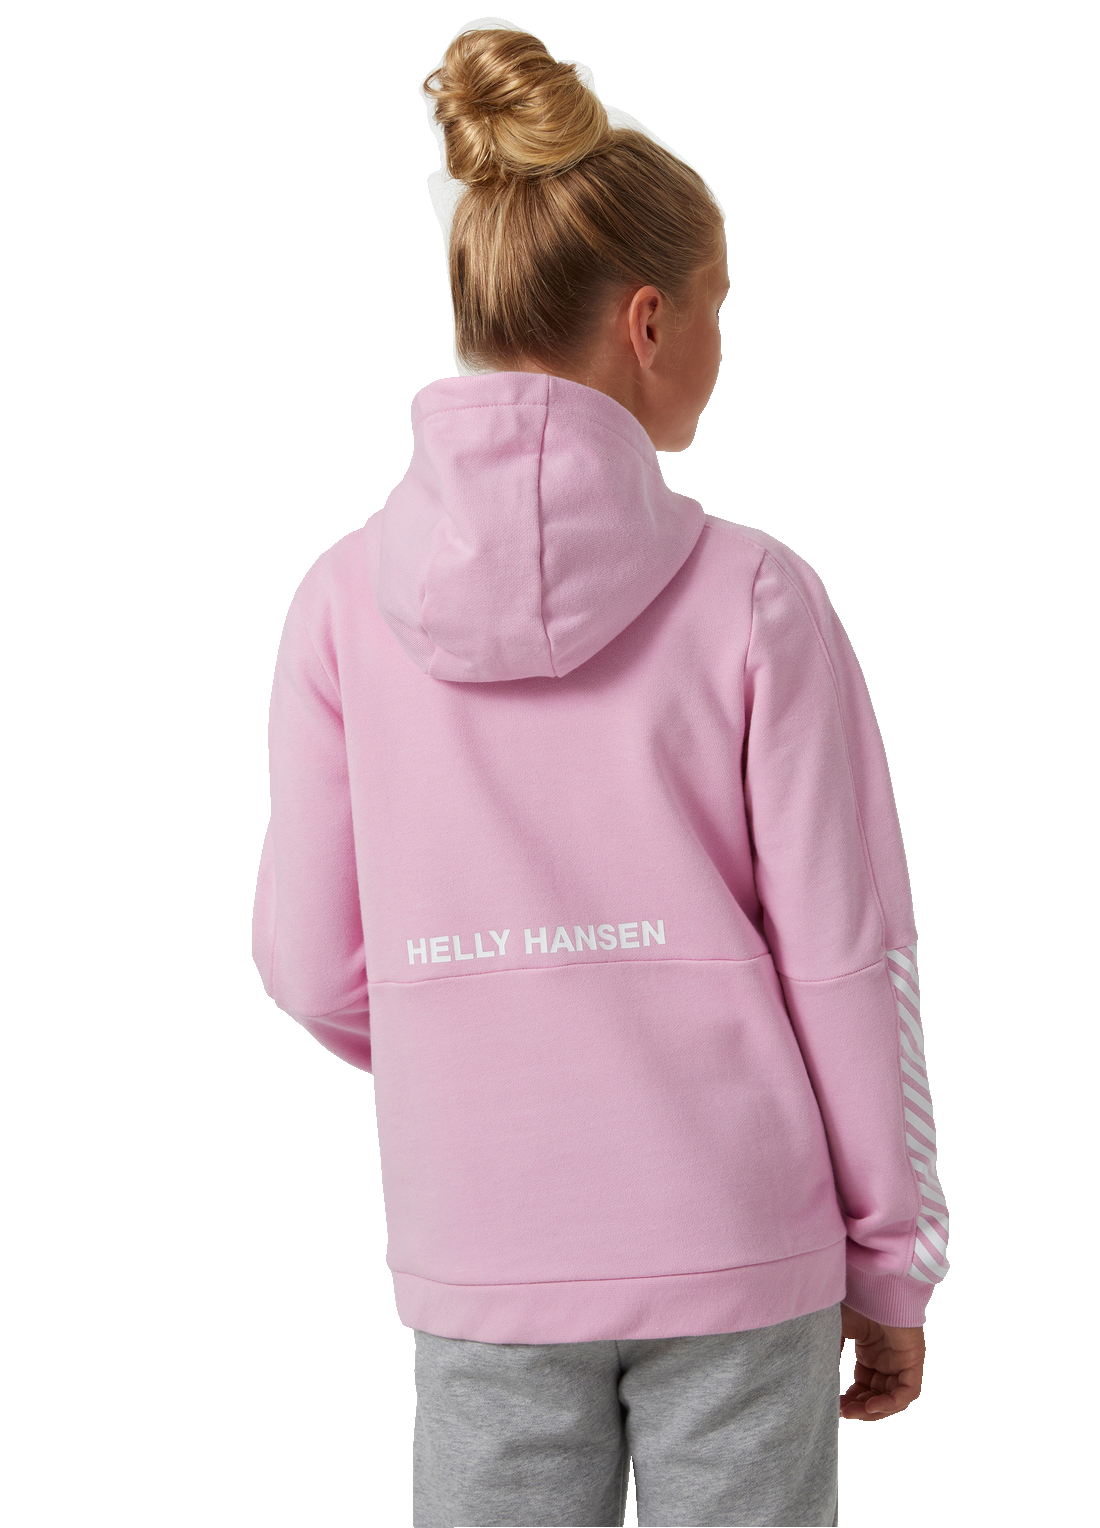 Helly Hansen Junior Active Hoodie vaaleanpunainen huppari värissä Pink Sorbet takaa kuvattuna tytön päällä